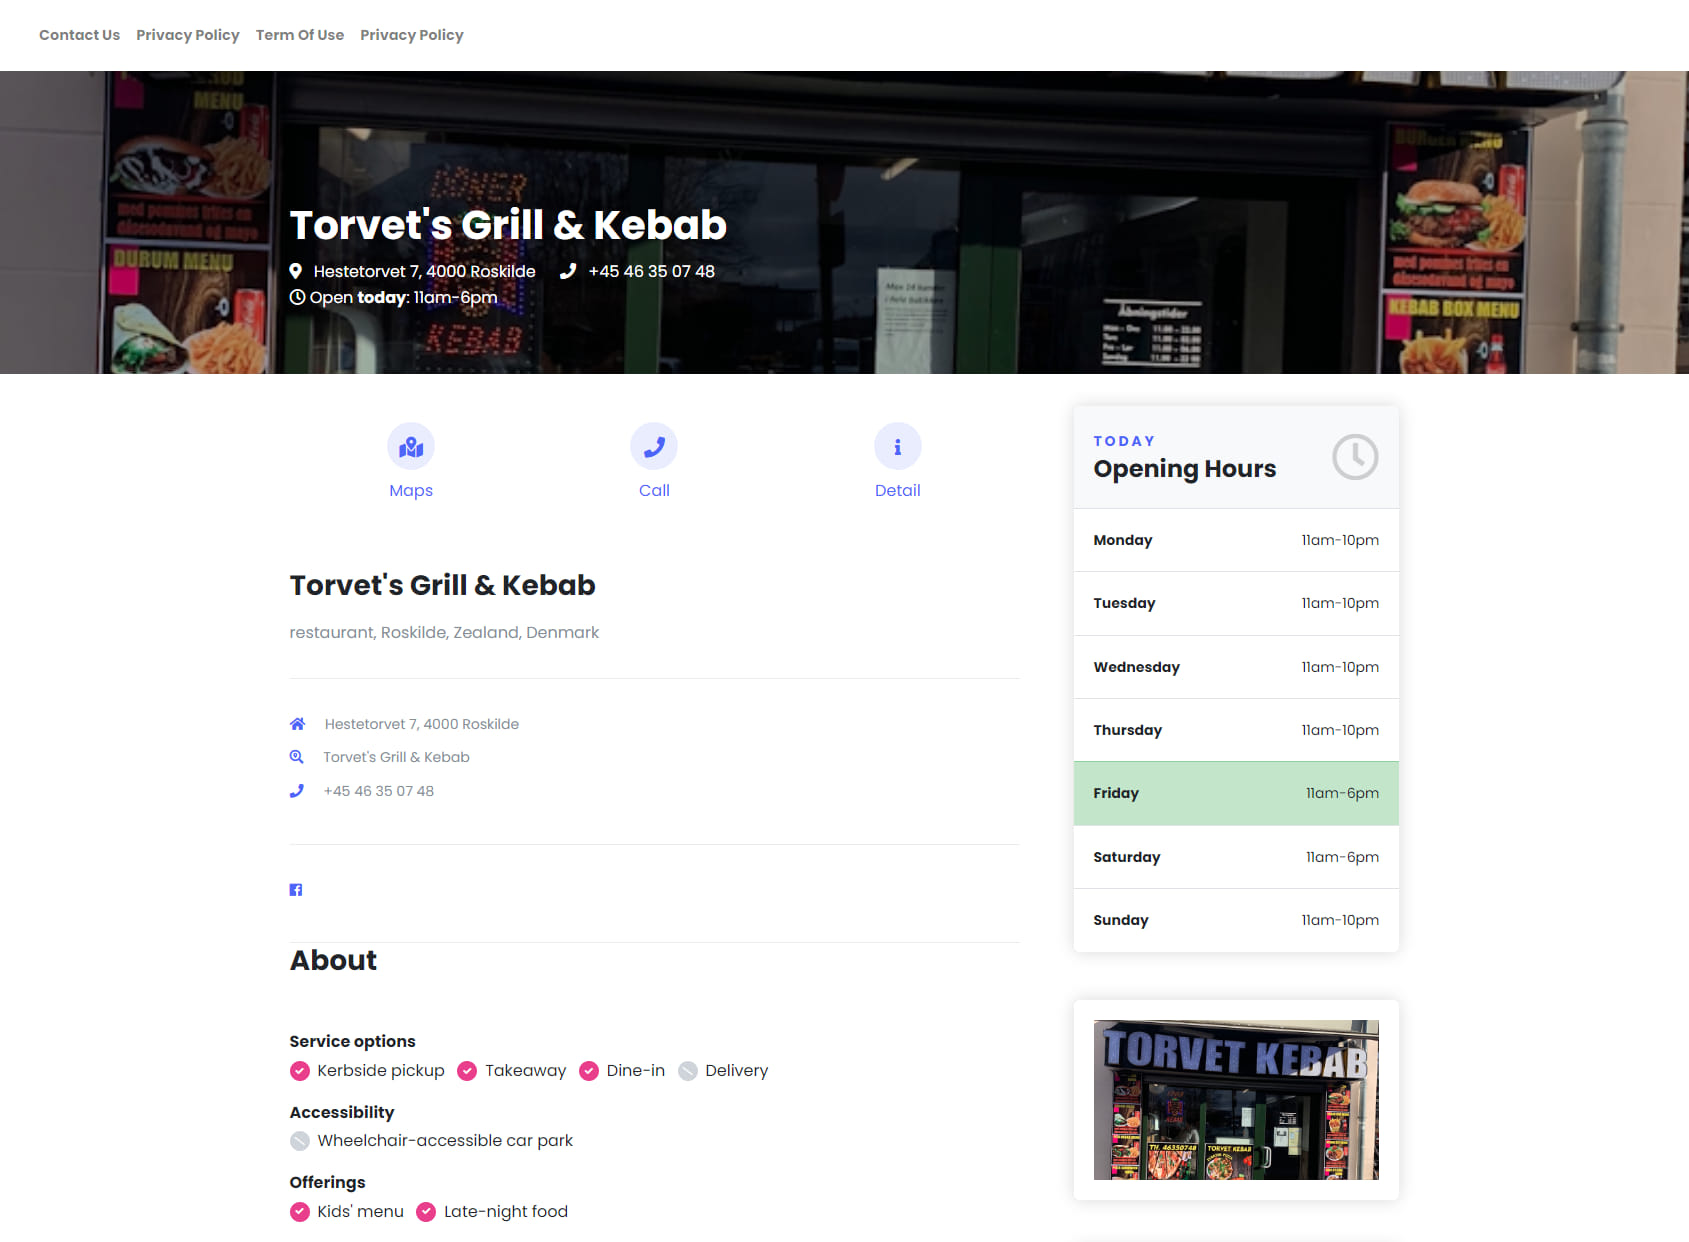 Torvet's Grill & Kebab